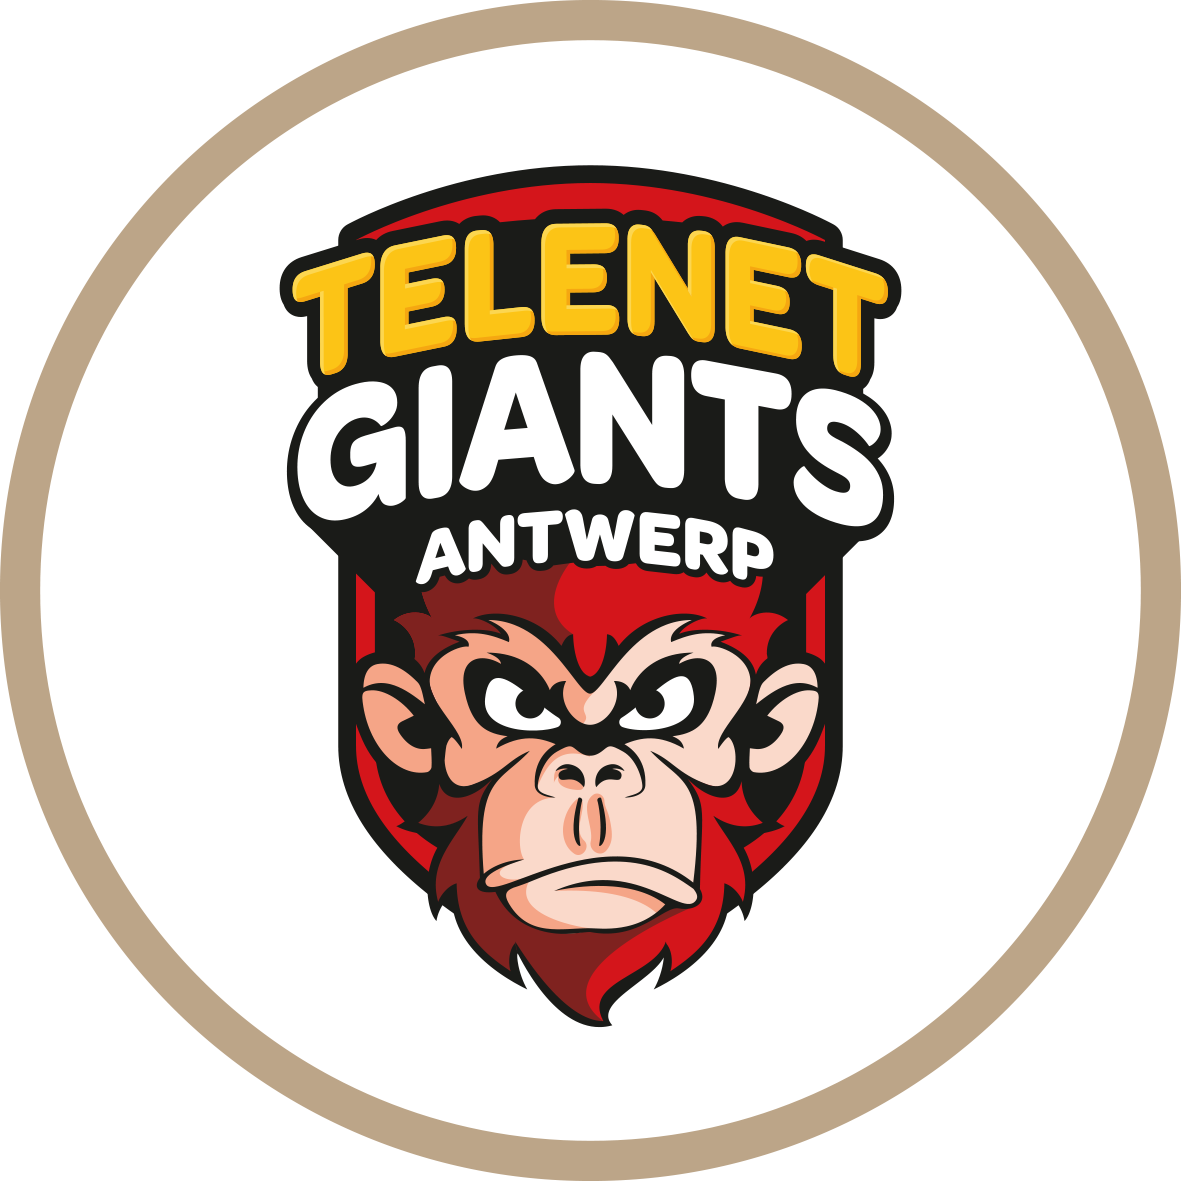 Port of Antwerp Giants Antwerpen